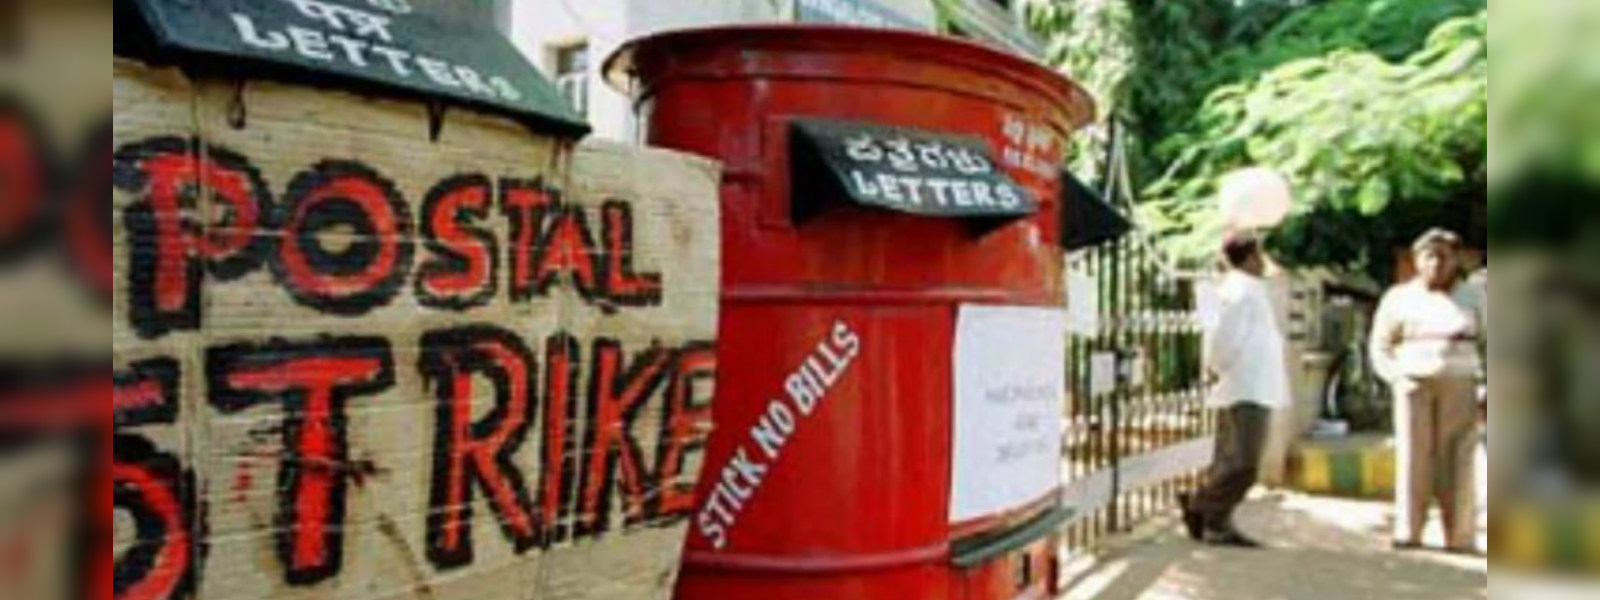 Postal strike ends after 48 hours